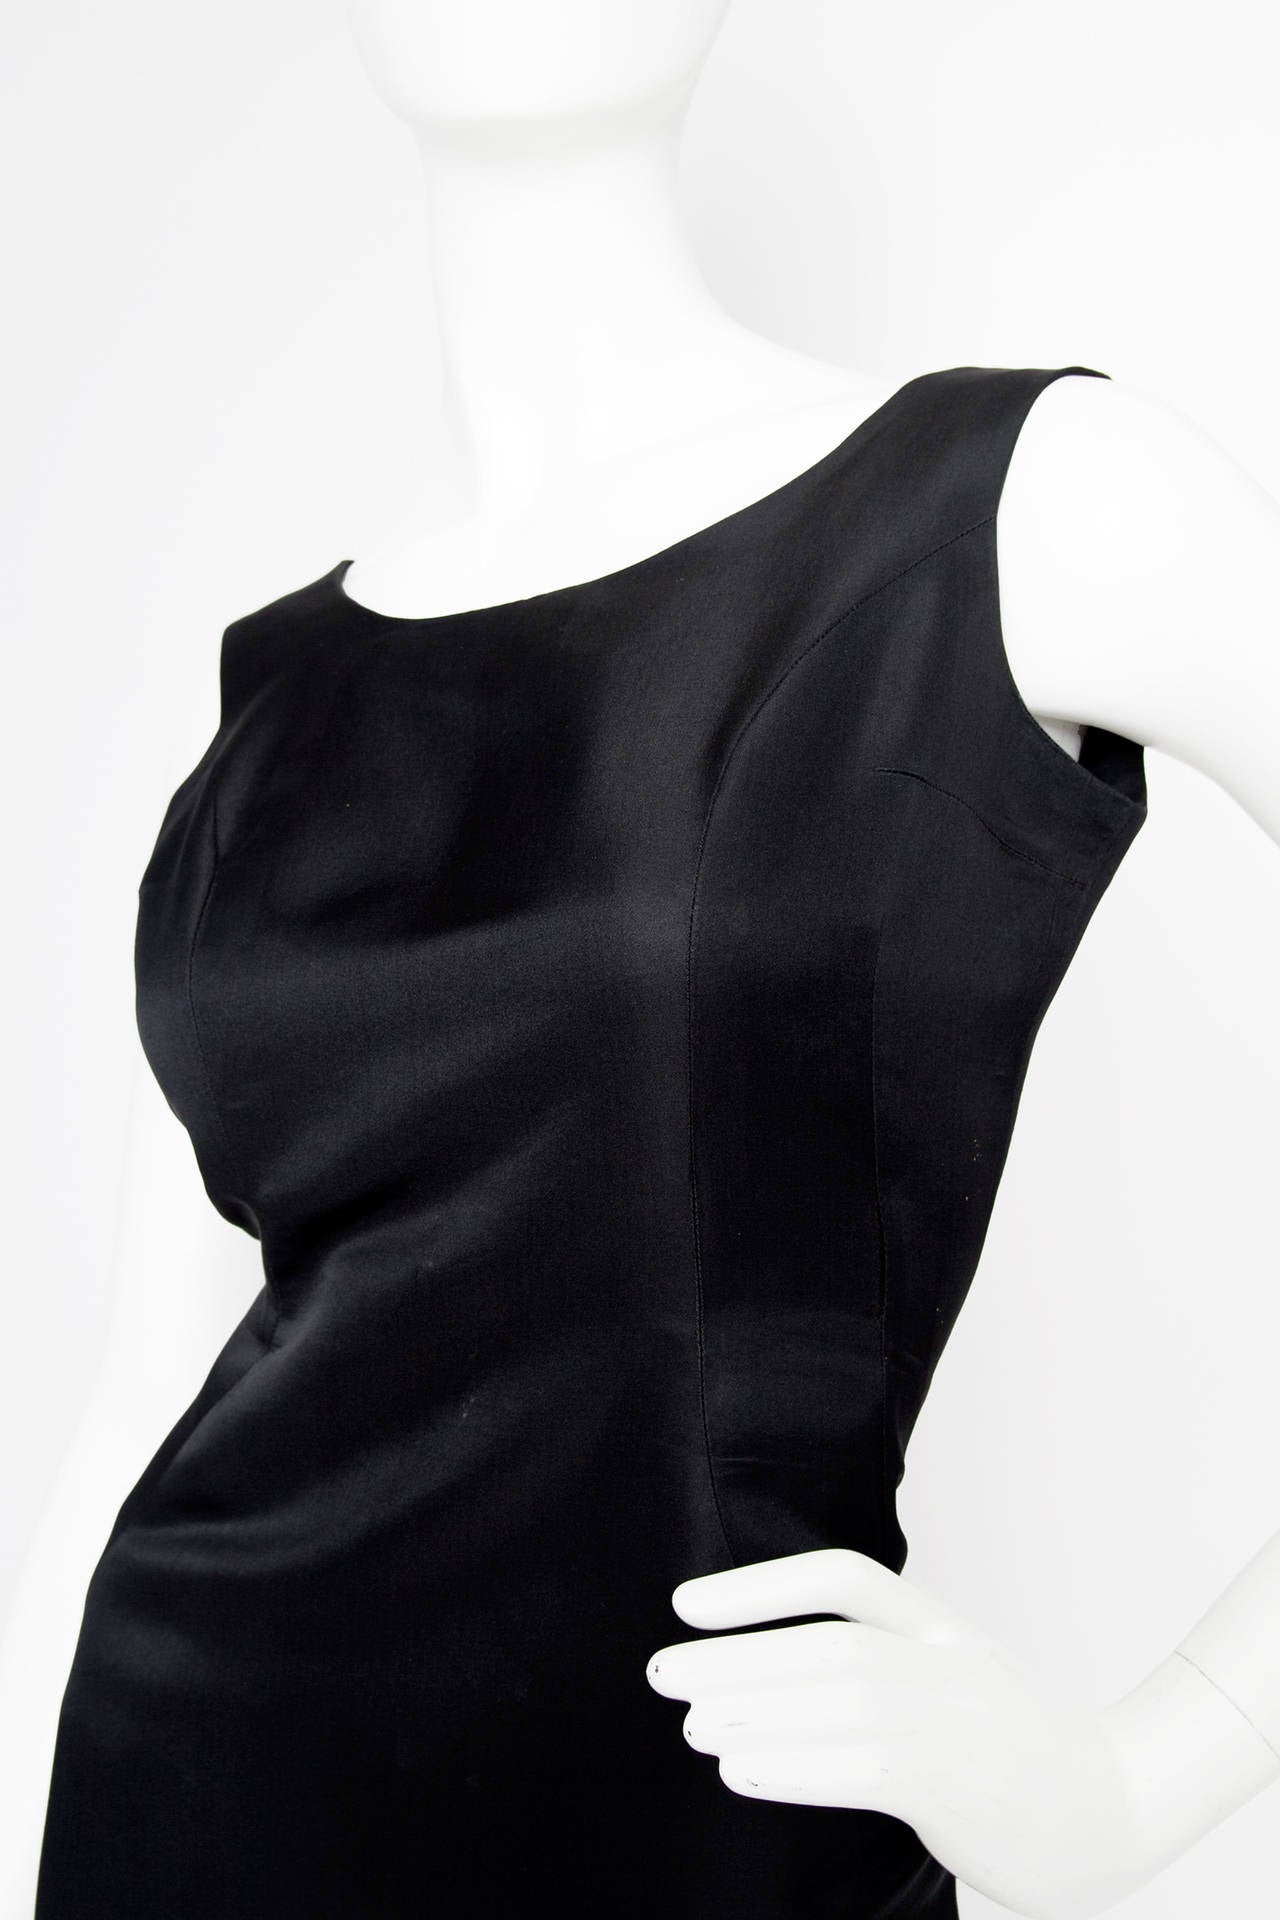 Women's Rare 1960s Pierre Cardin Haute Couture Little Black Dress For Sale